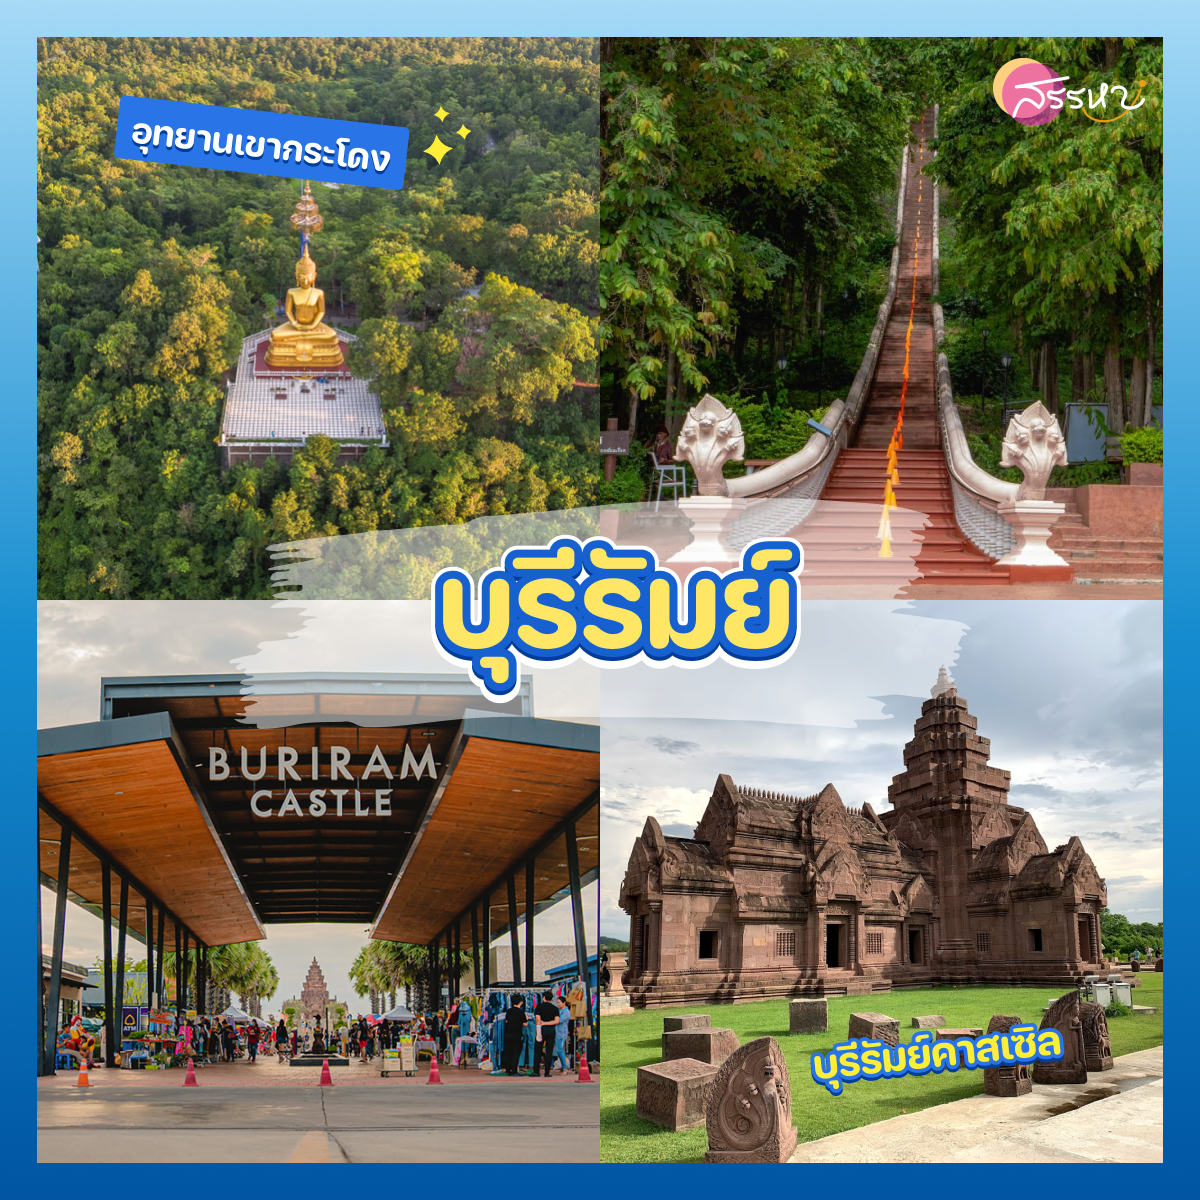 ปักหมุด 7 จังหวัด สถานที่ท่องเที่ยวในไทย ตามรอยคัลแลนกับพี่จอง ส่องธรรมชาติและอุทยาน